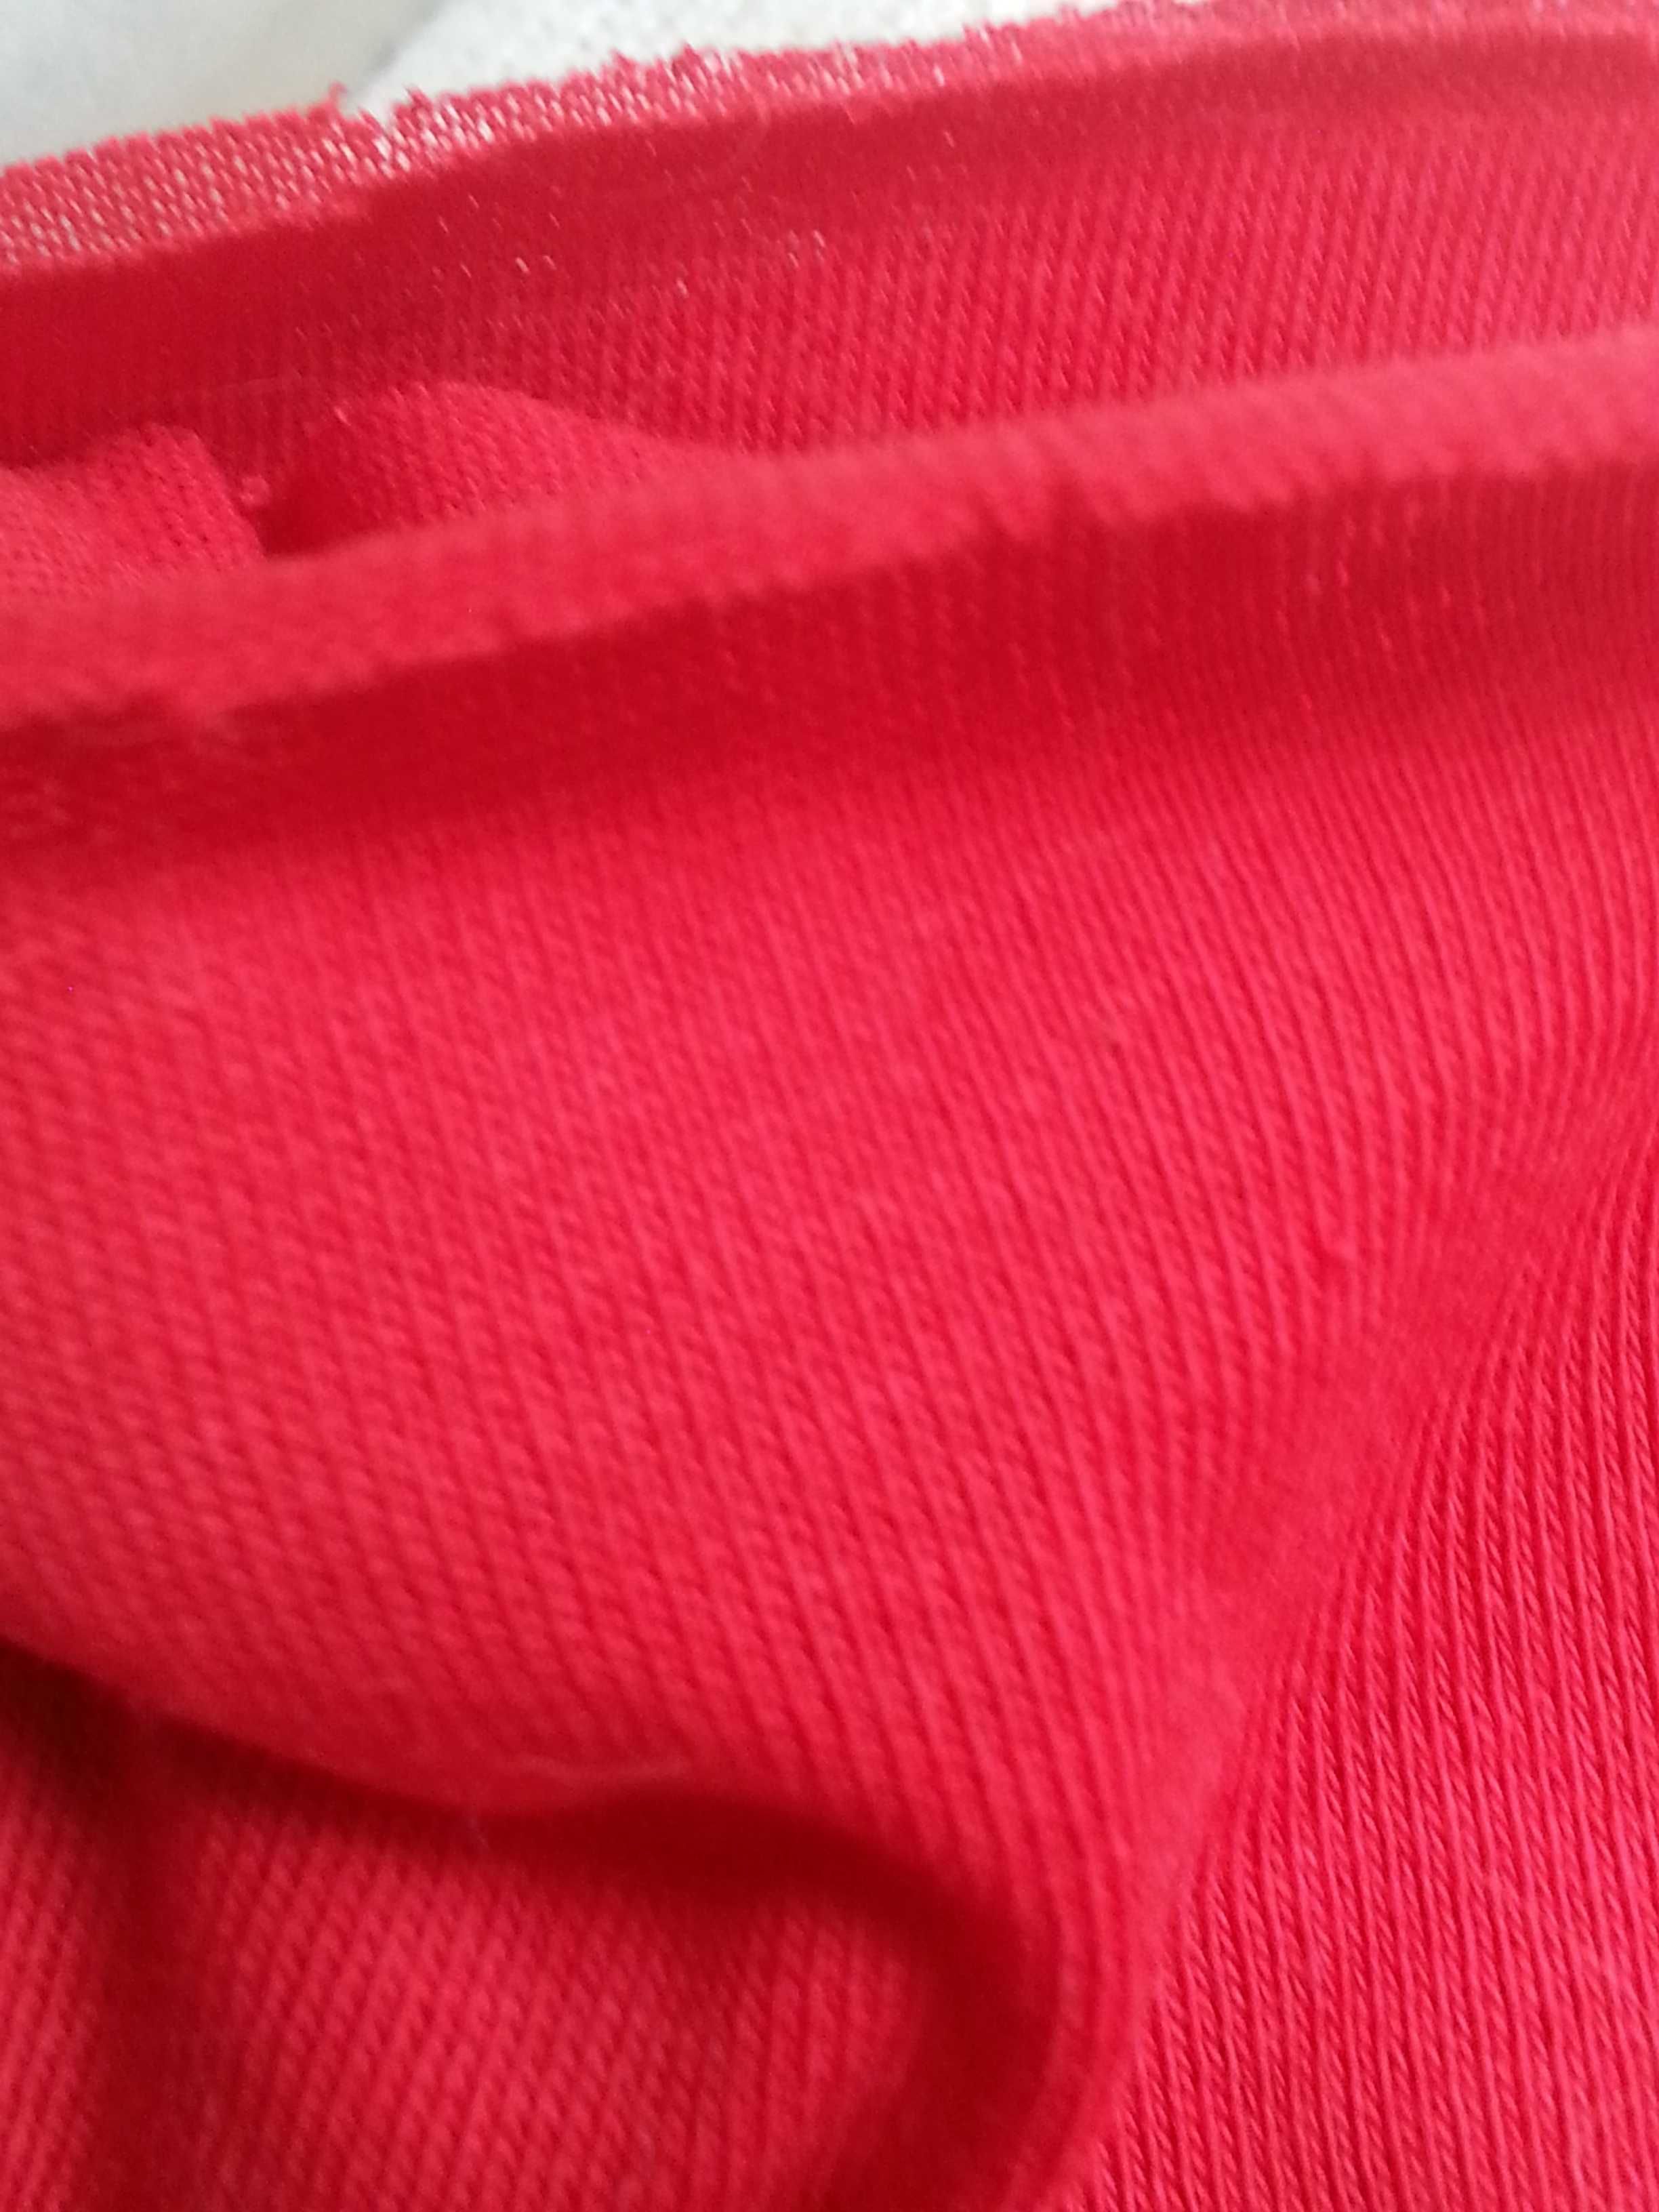 Tkanina czerwona, bawełna, szer. 172 cm